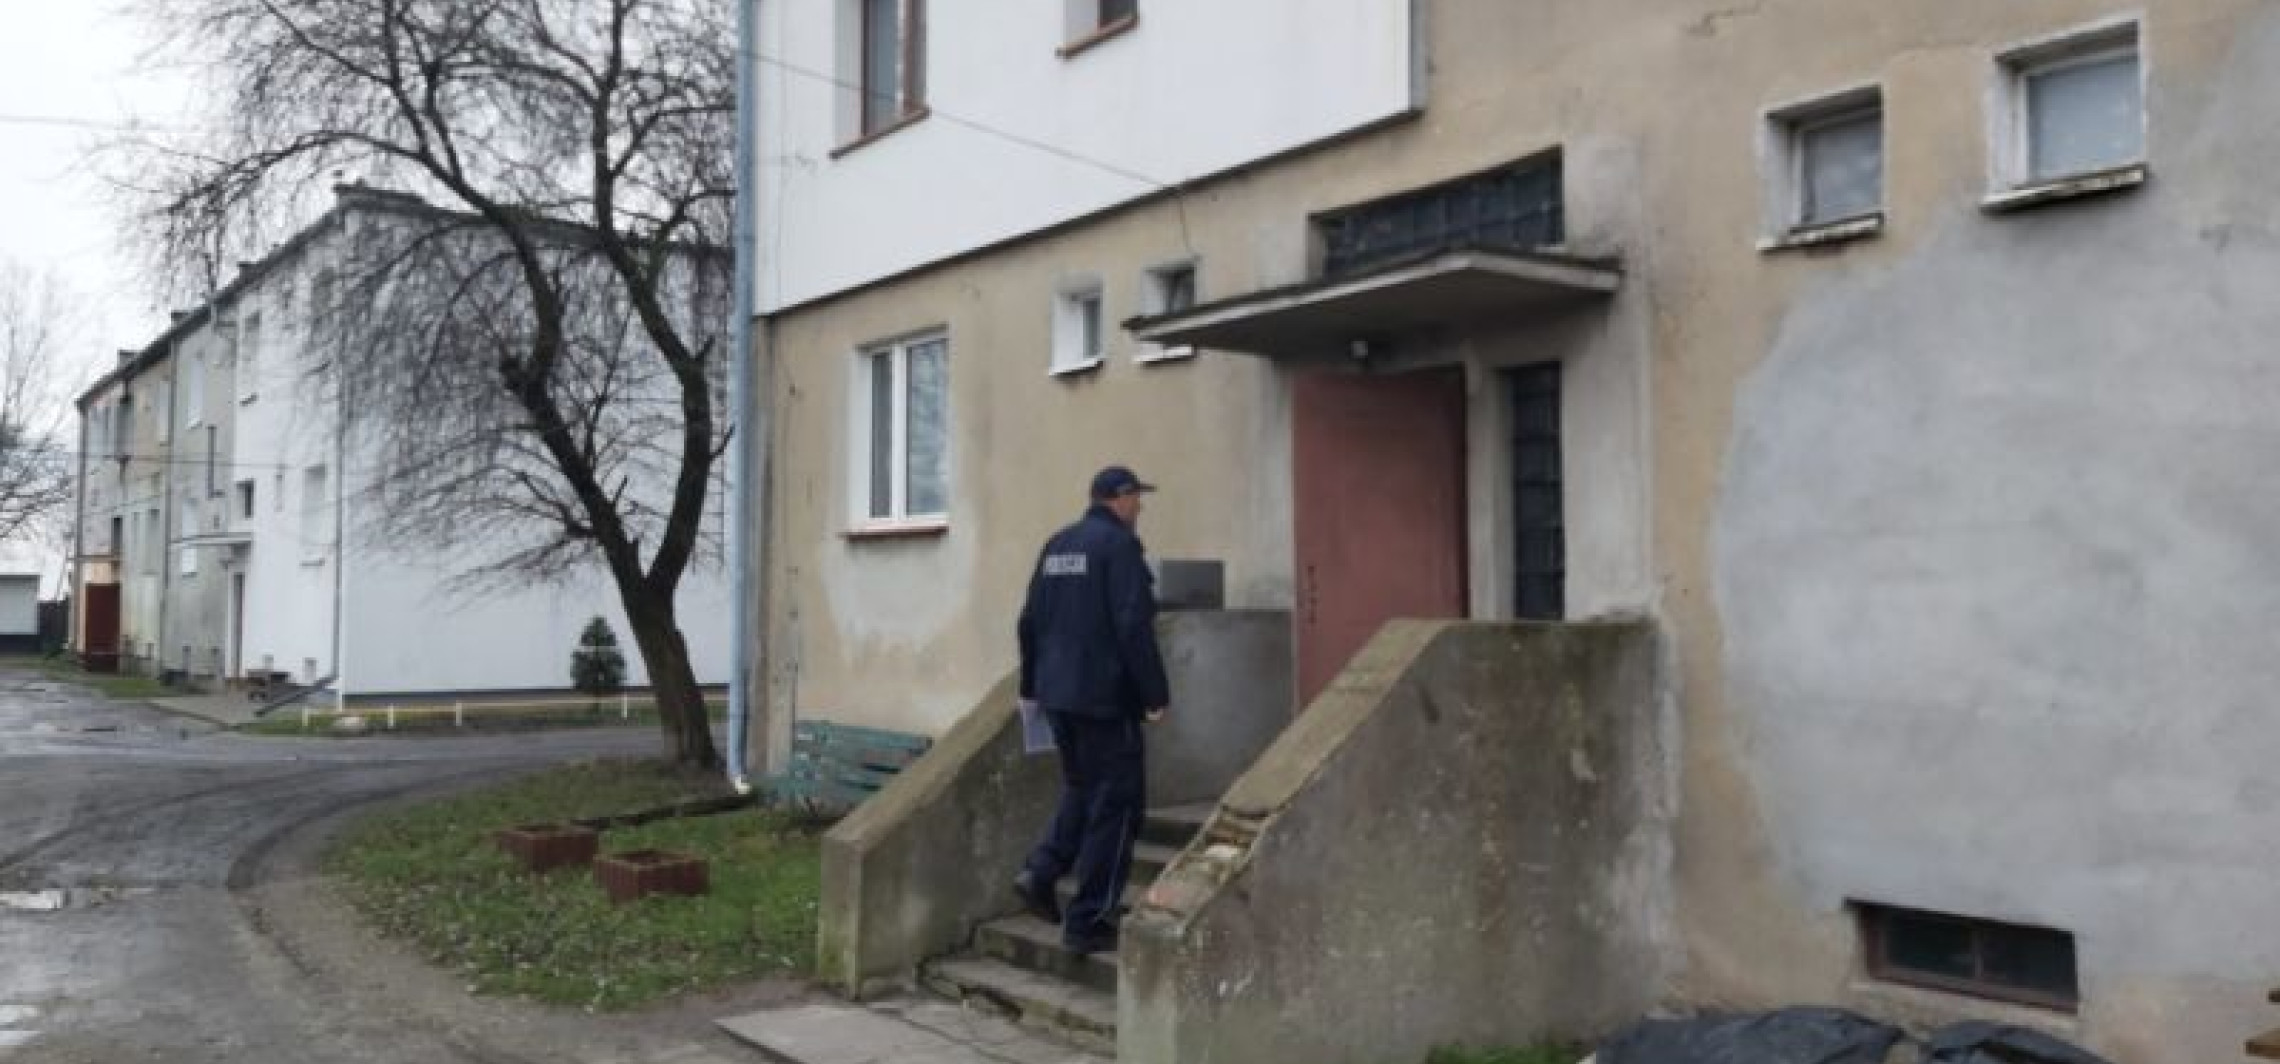 Inowrocław - Policjanci kontrolują osoby na kwarantannie